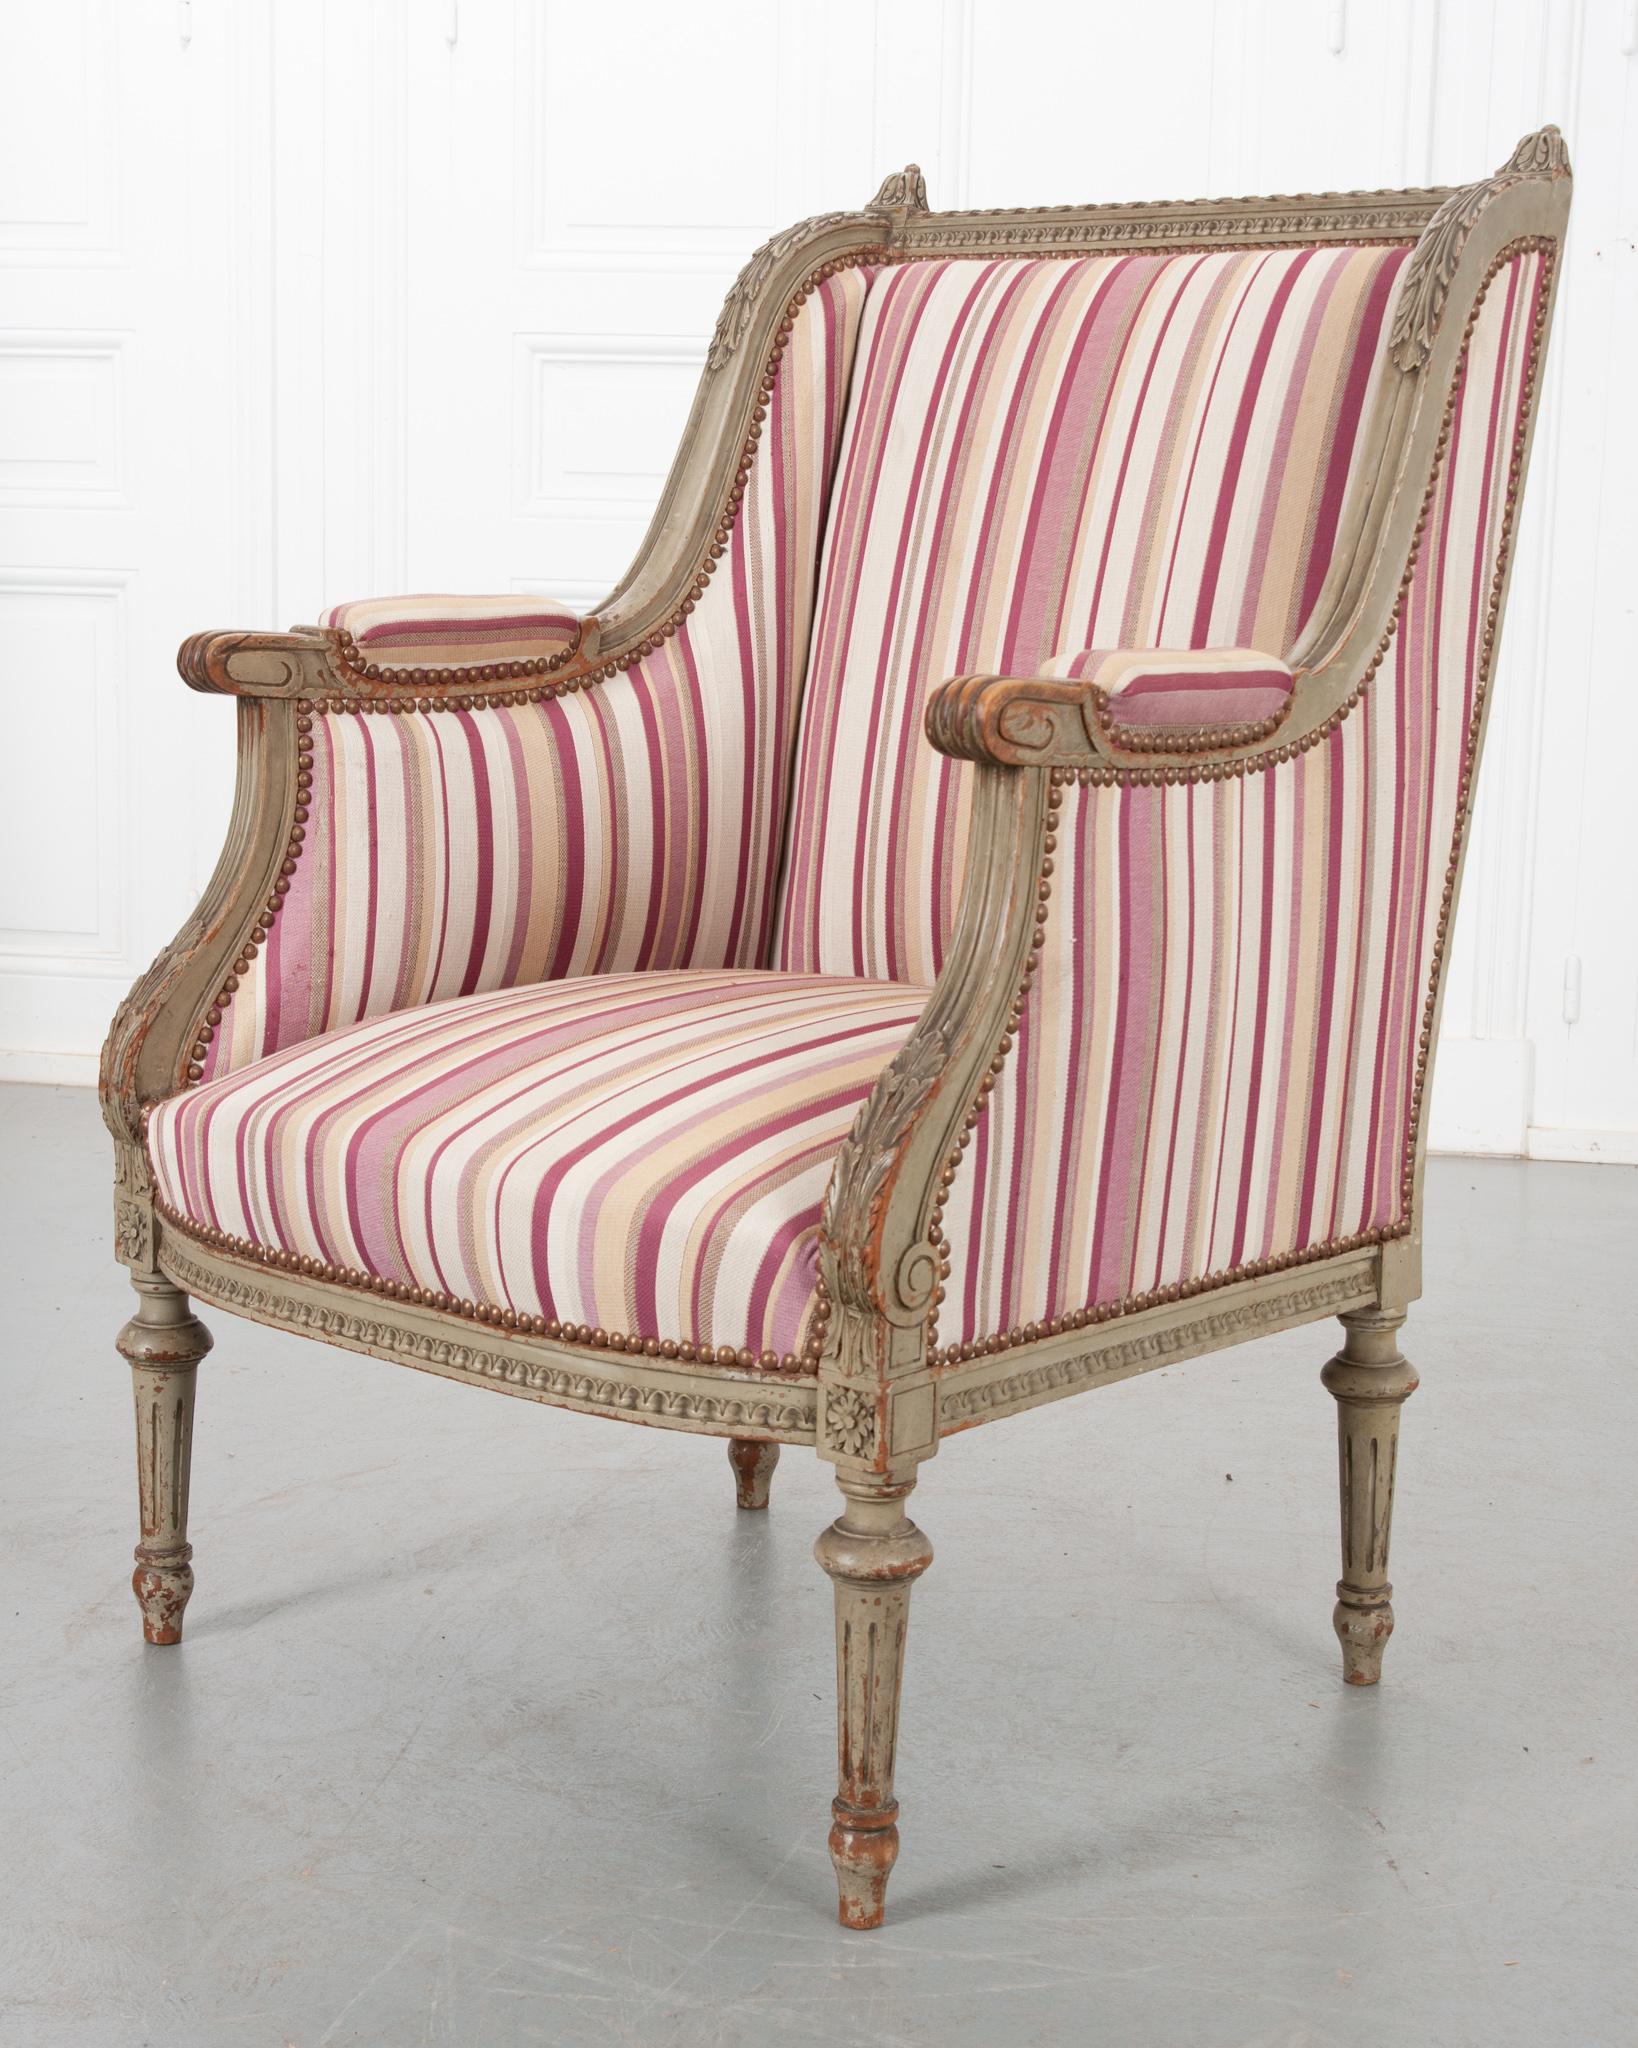 Une fabuleuse bergère individuelle de style Louis XVI du 19ème siècle en France. Ce fauteuil ancien présente une armature méticuleusement sculptée et peinte, sur laquelle un joli tissu à rayures a été apposé. Le cadre carré est orné de motifs